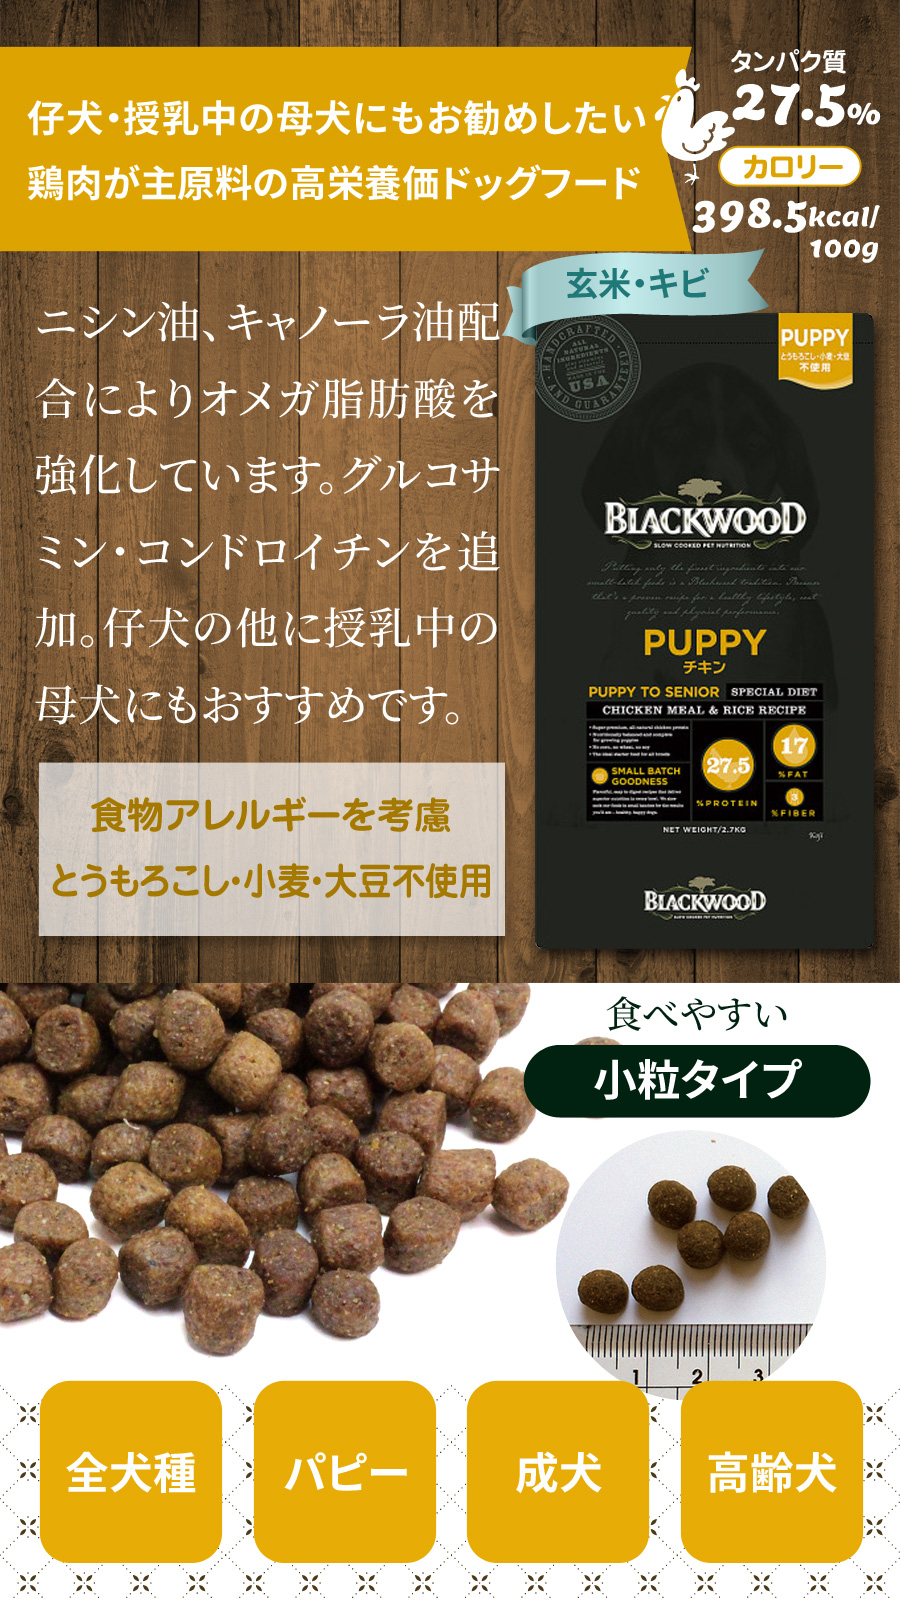 ブラックウッドパピーはチキンミール主原料の主に小型犬子犬用の